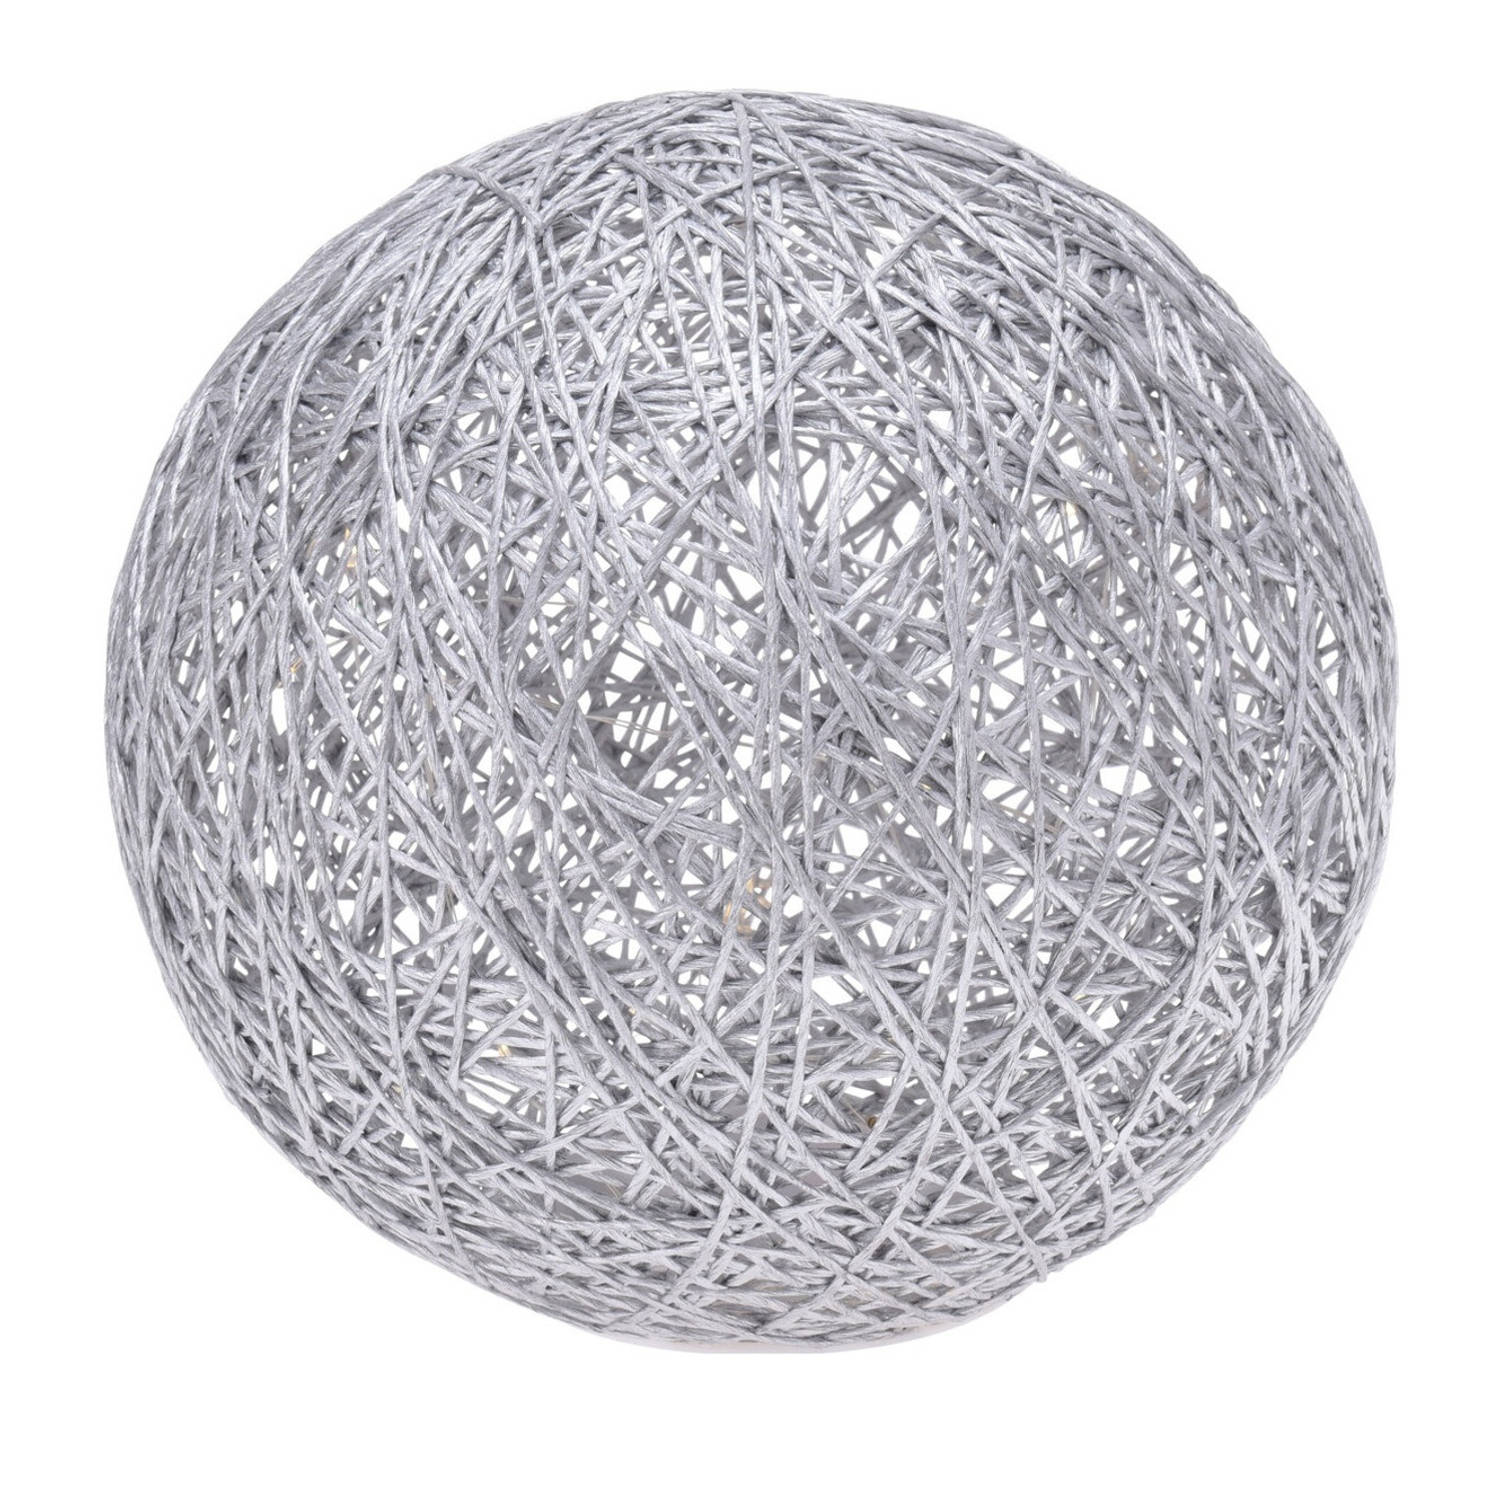 Verlichte Decoratie Bol Metallic Zilver 20 Cm Met 20 Warm Witte Lampjes - Kerstverlichting Figuur